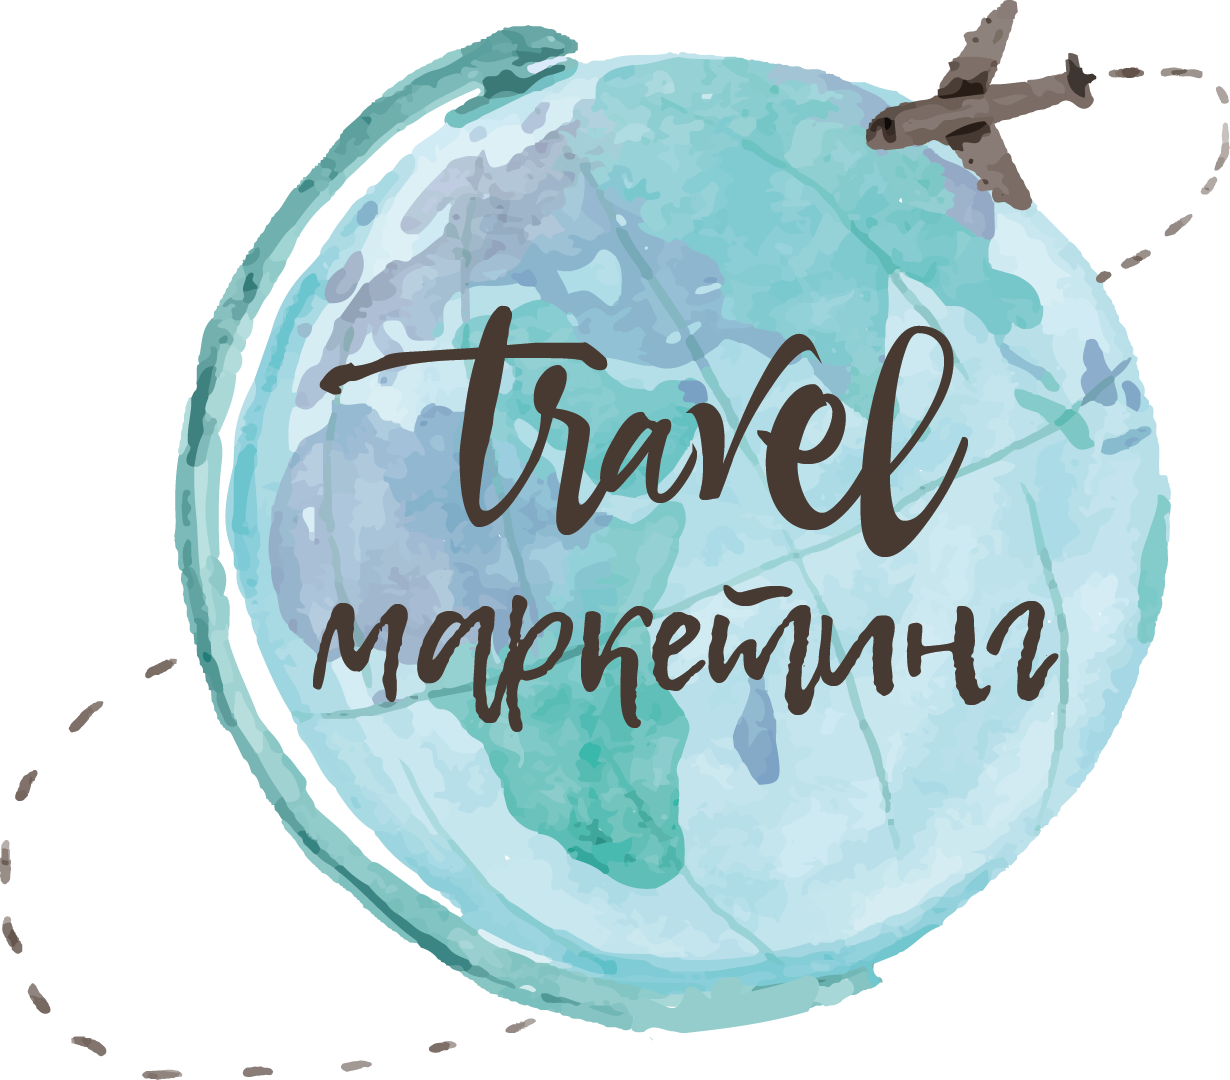 Travel-маркетолог Елена Белоусова